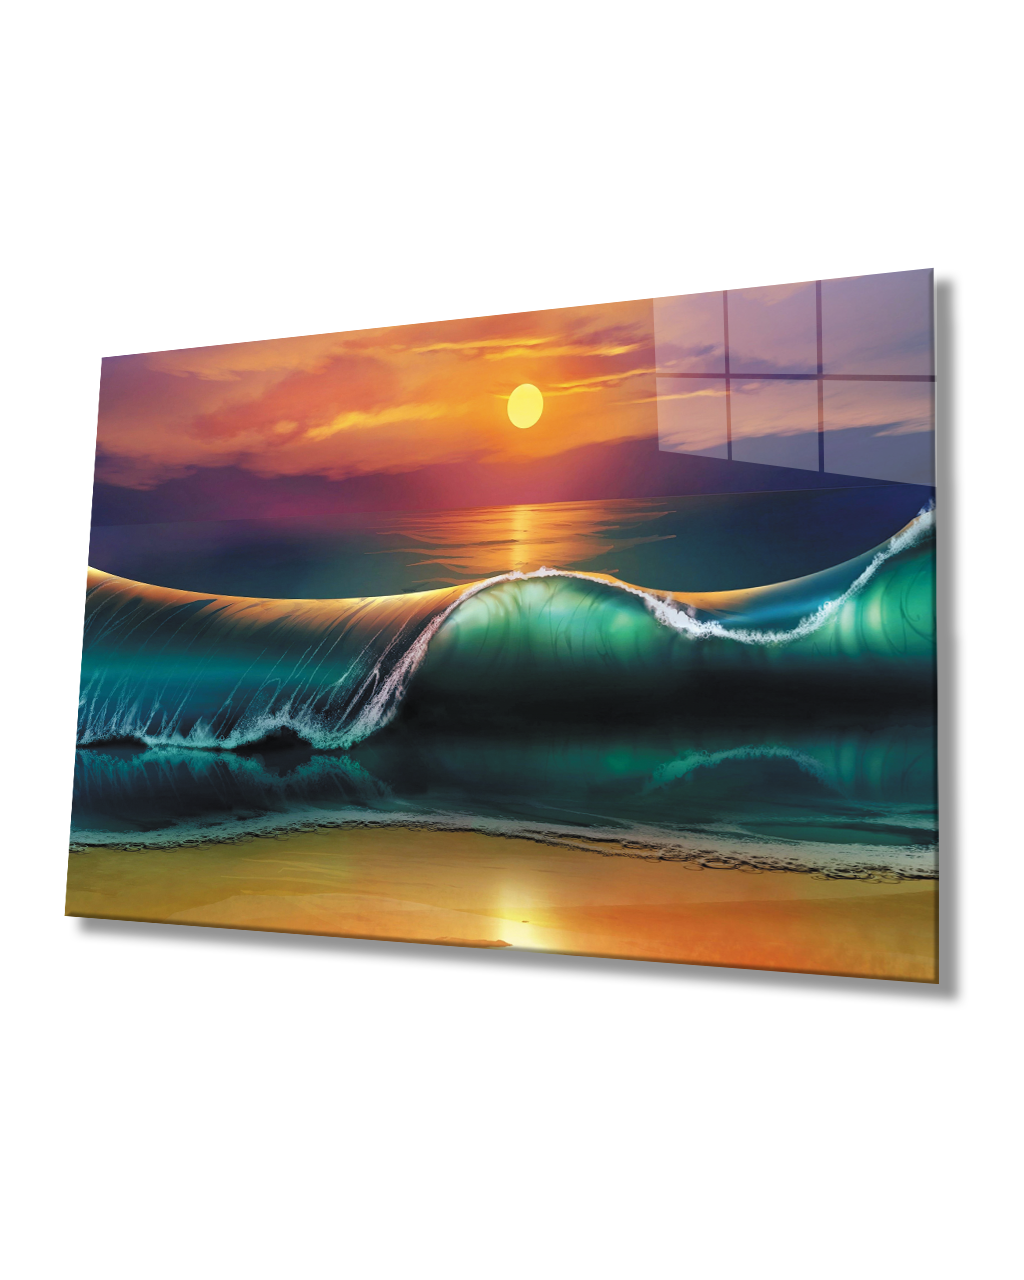 Gün Batımı ve Dalga Cam Tablo  4mm Dayanıklı Temperli Cam Sunset and Wave Glass Table 4mm Durable Tempered Glass